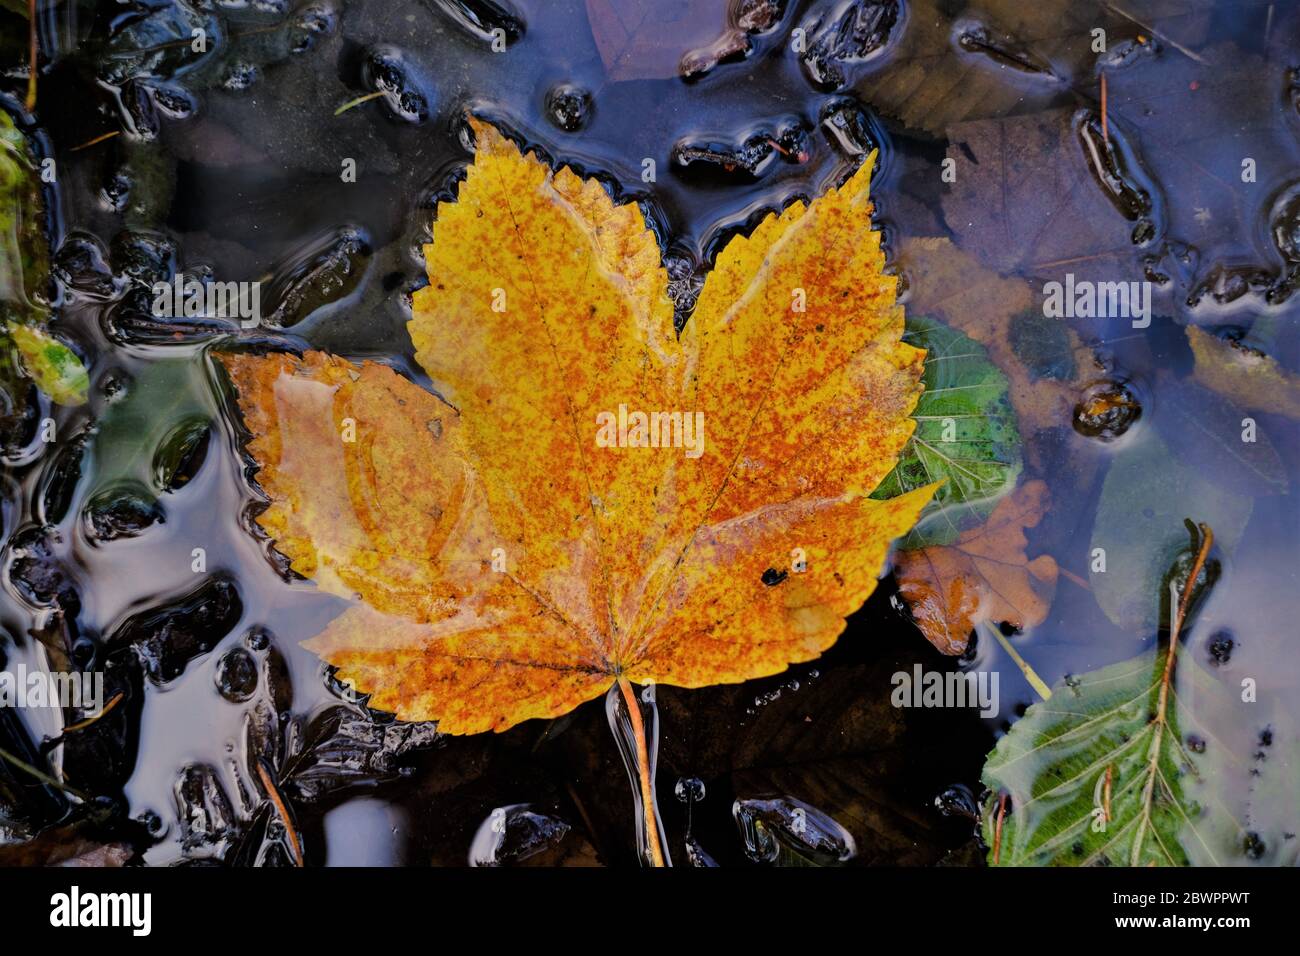 Herbstzeit. Herbstblatt auf der Wasseroberfläche. Gelber Herbst Ahorn großes Blatt in einer Pfütze mit braunen und grünen Blättern.Herbst Saison Konzept Stockfoto